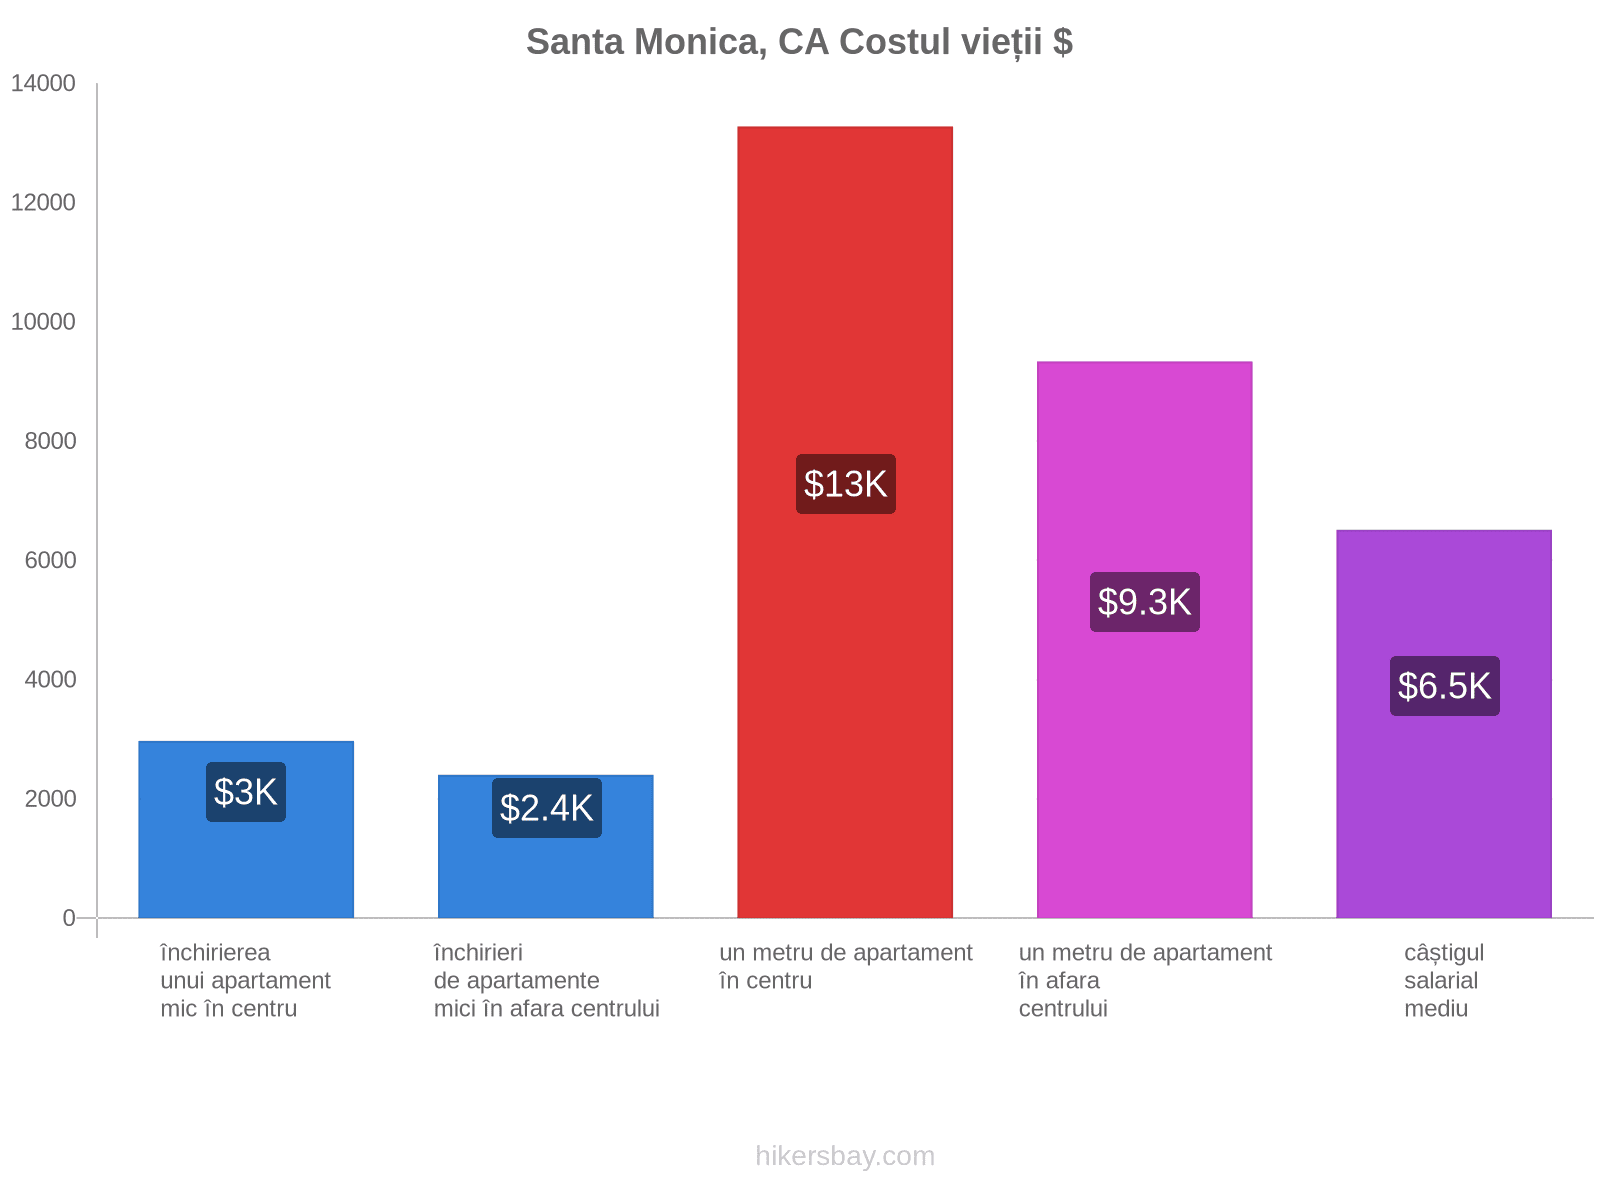 Santa Monica, CA costul vieții hikersbay.com